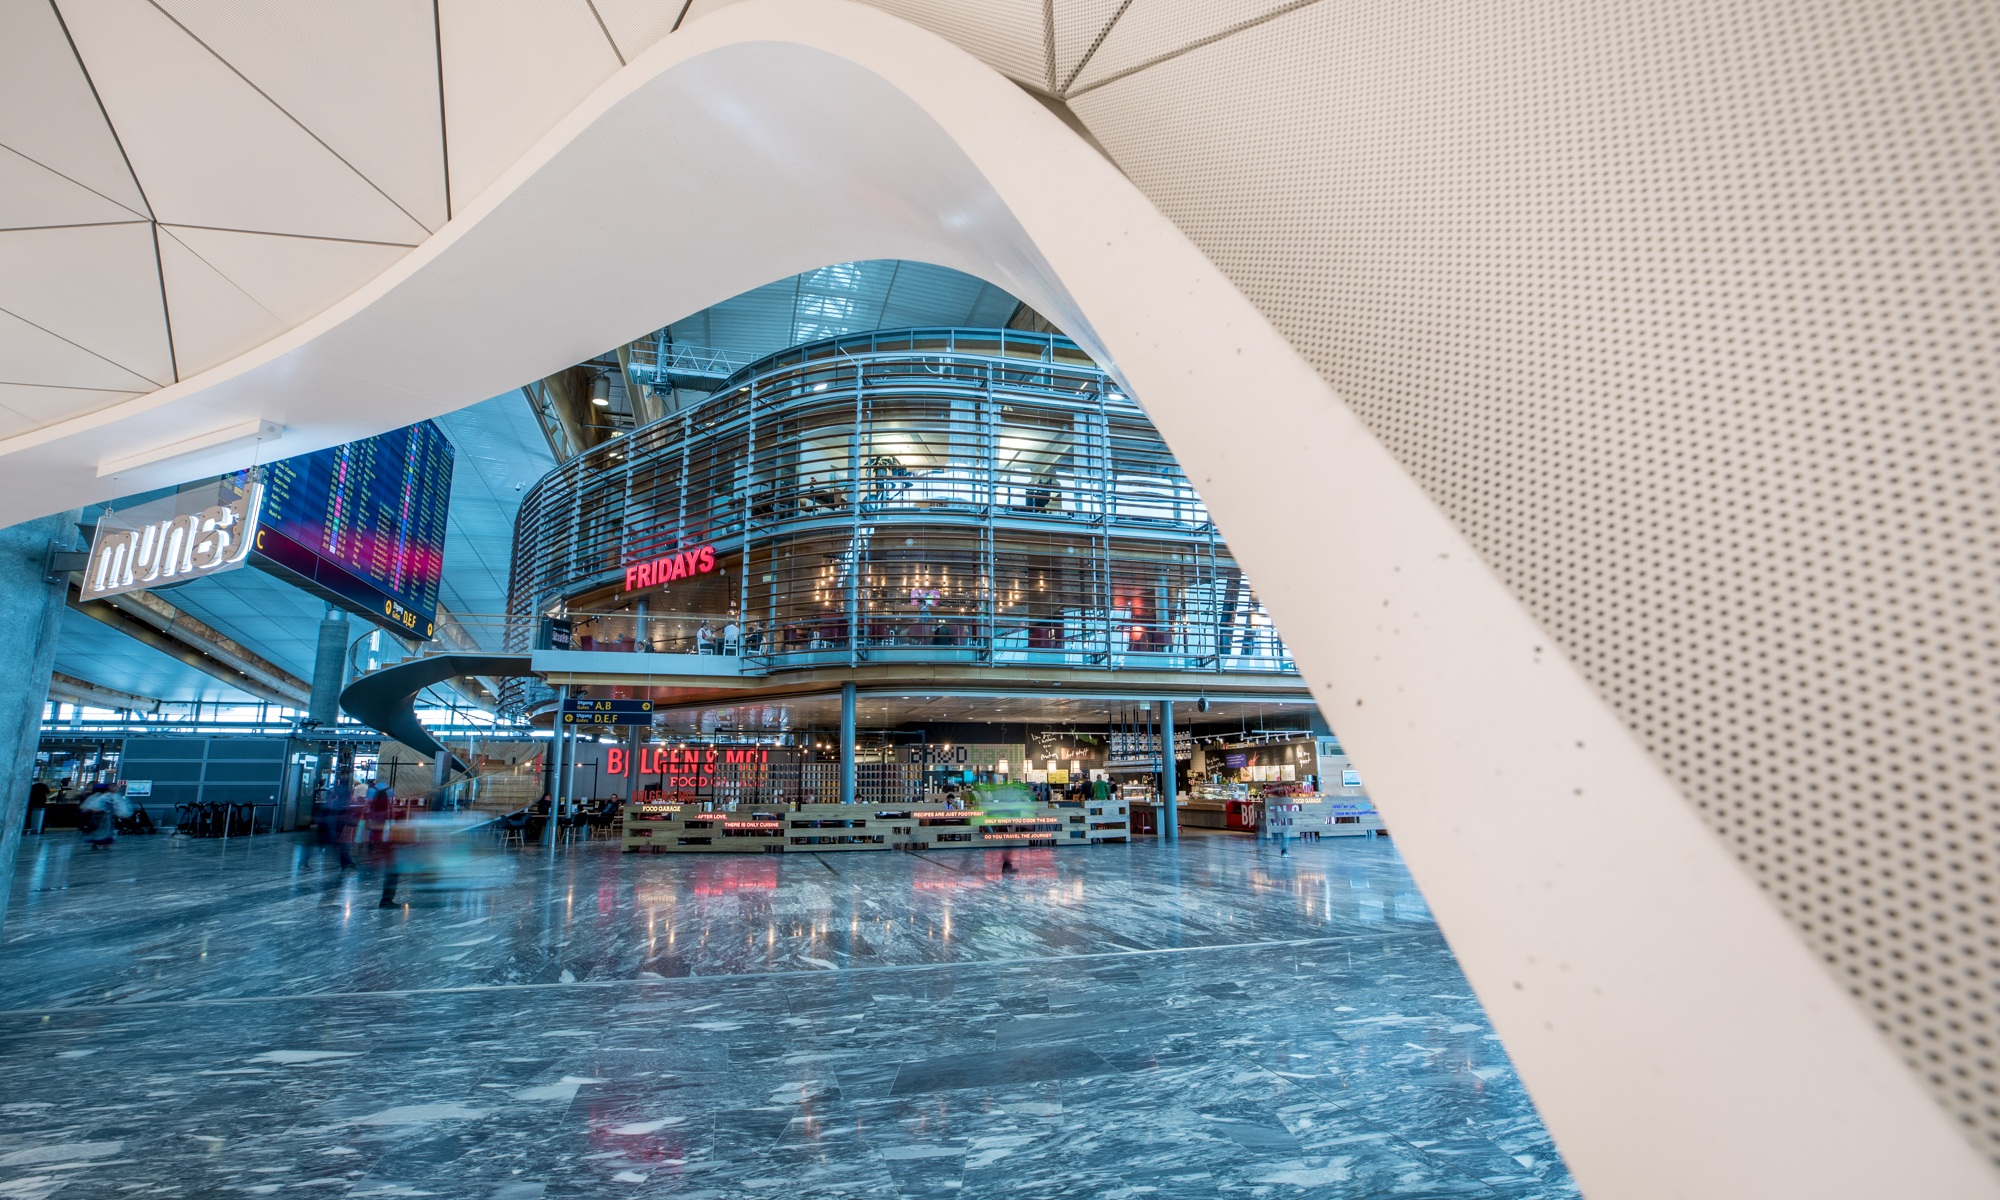 Detailaufnahme eines Pavillons auf dem Flughafen in Oslo